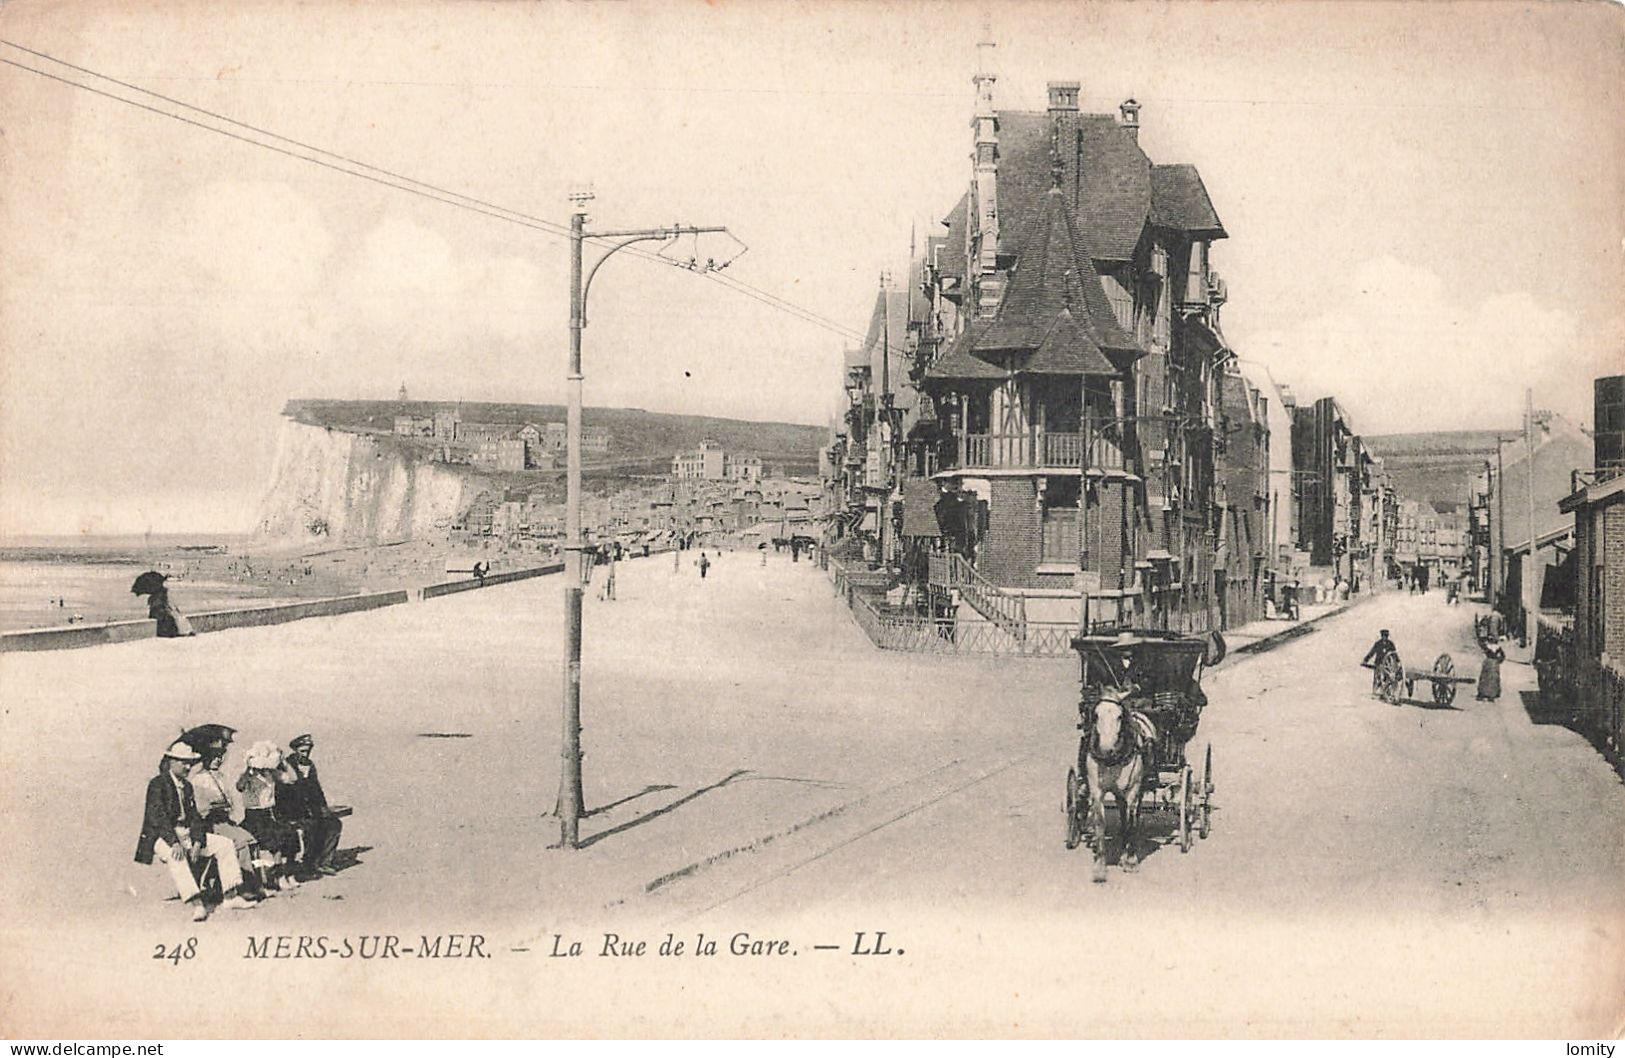 Destockage lot de 12 cartes postales CPA de la Somme Mers les bains Cayeux sur Mer Amiens Abbeville Bois de Cise